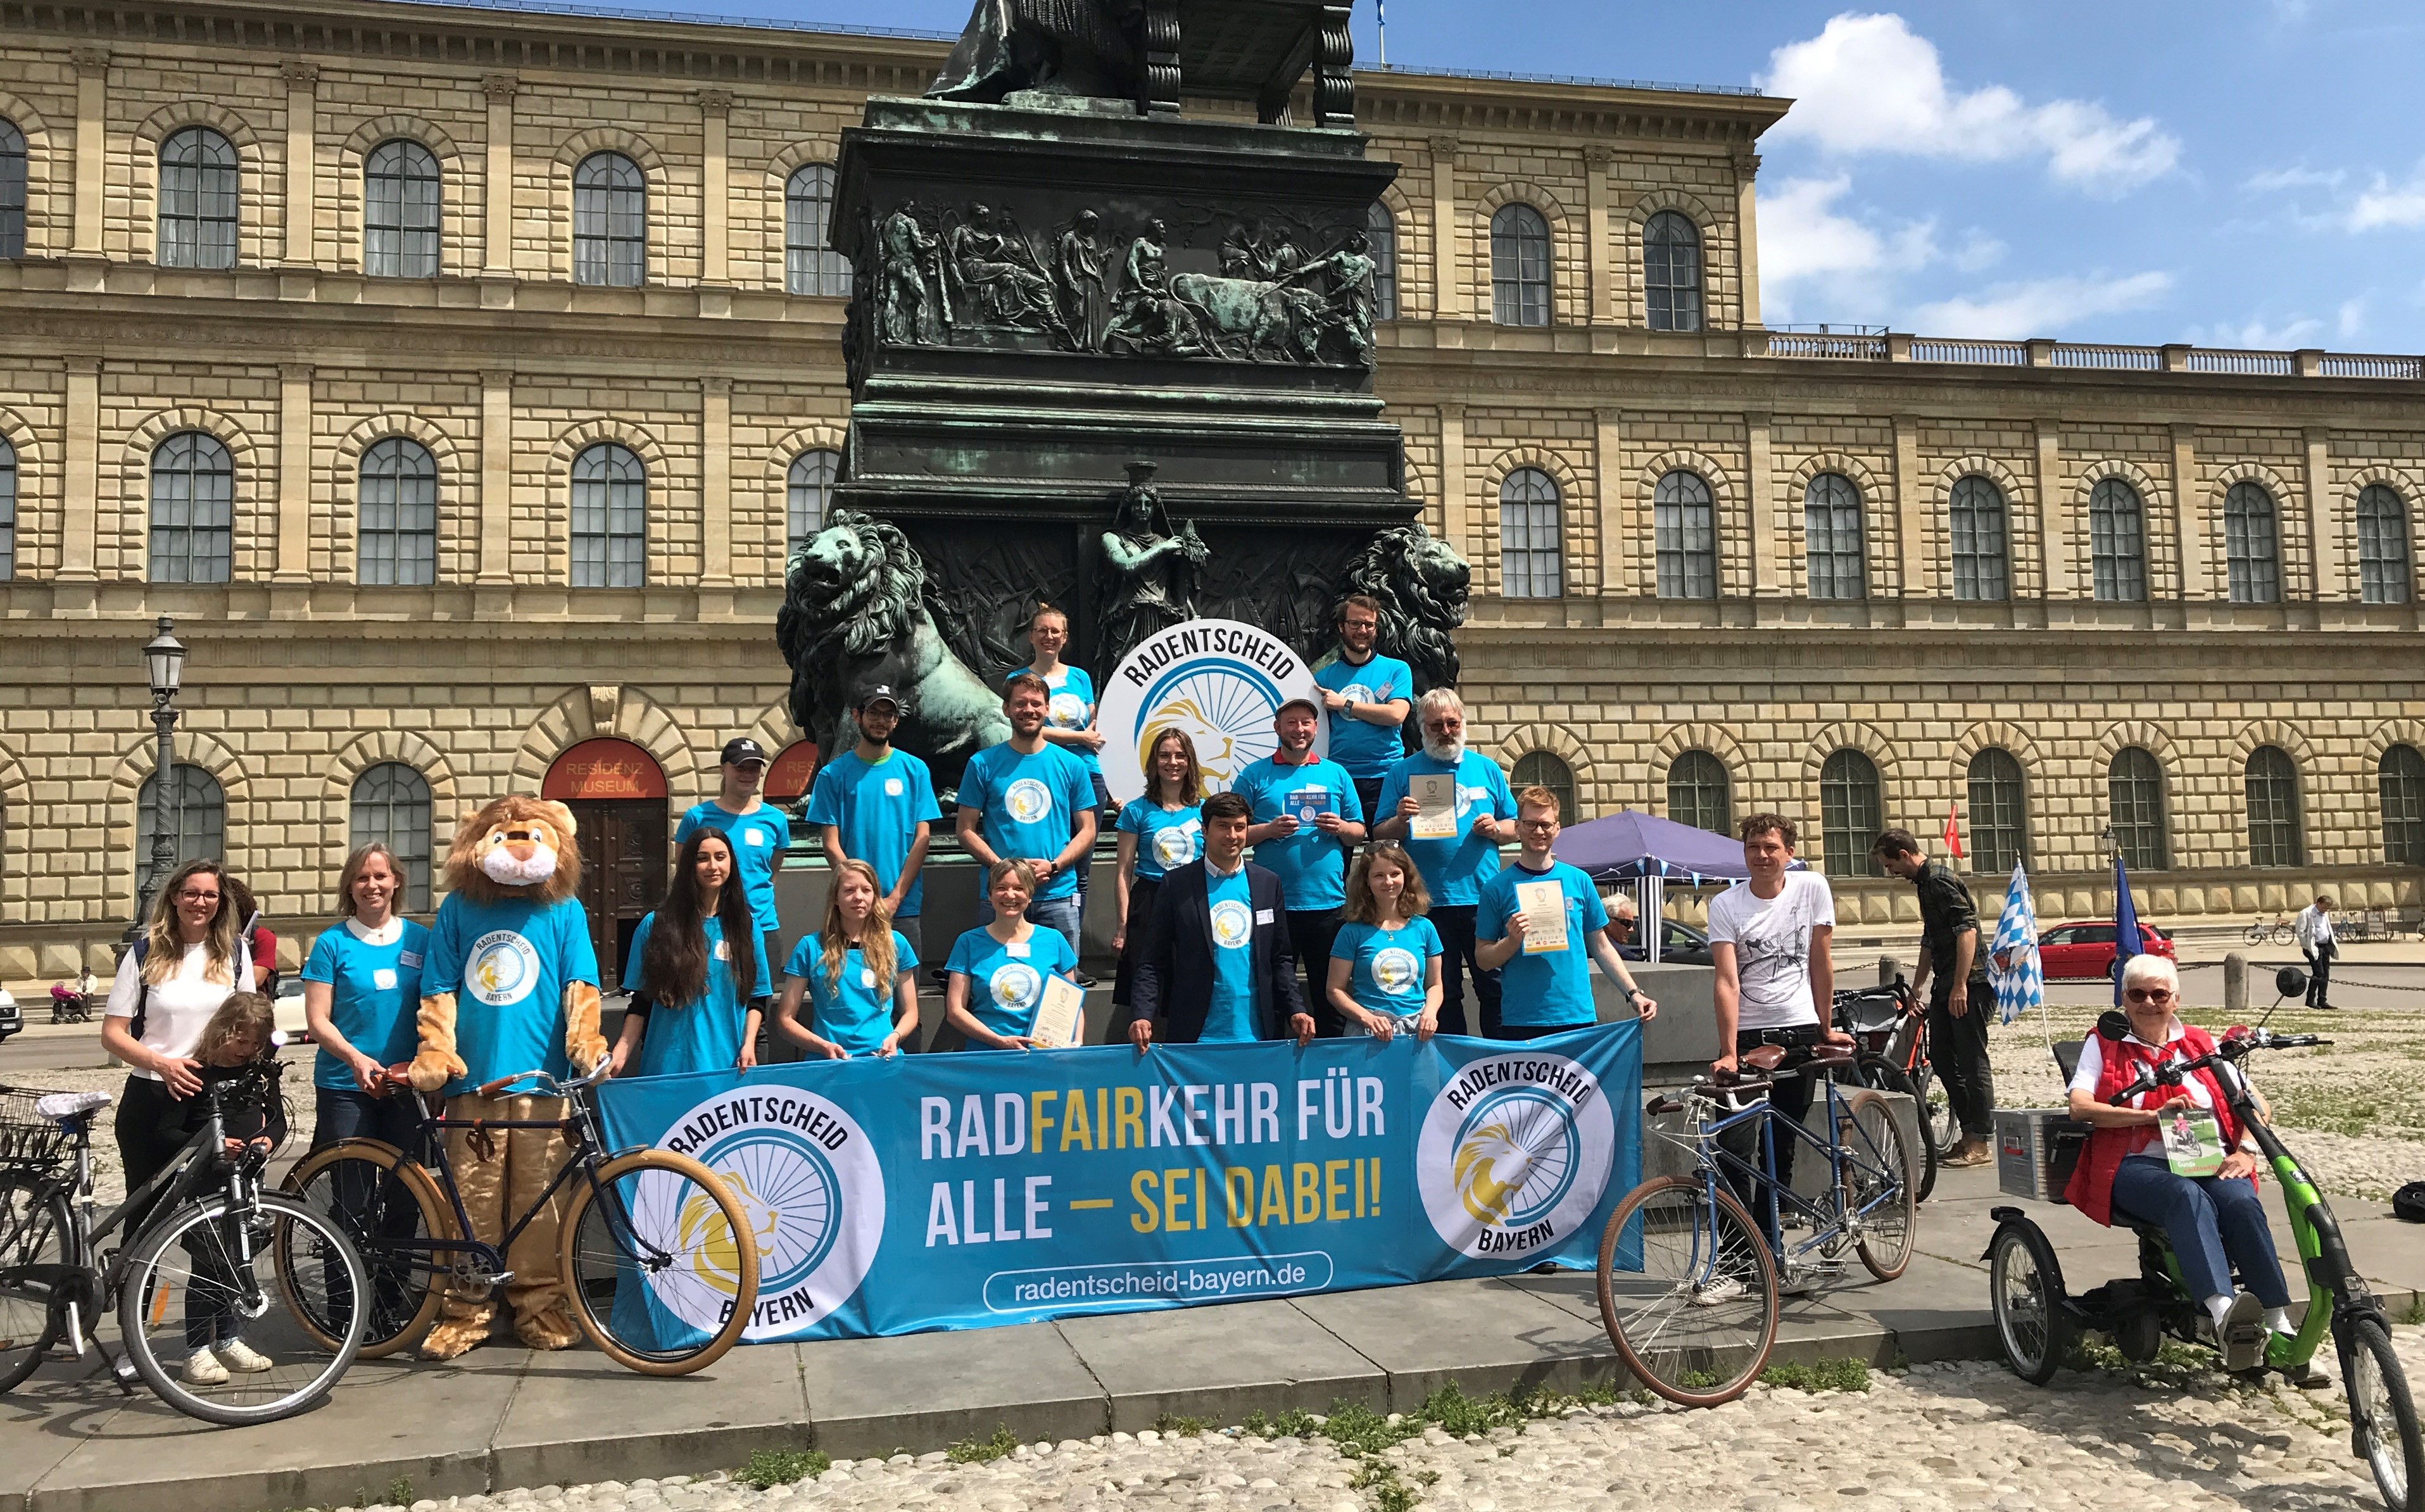 Etwa 15 Personen in blauen Aktions-T-Shirts präsentieren auf einem Platz in München das Transparent des Radentscheids Bayern. 